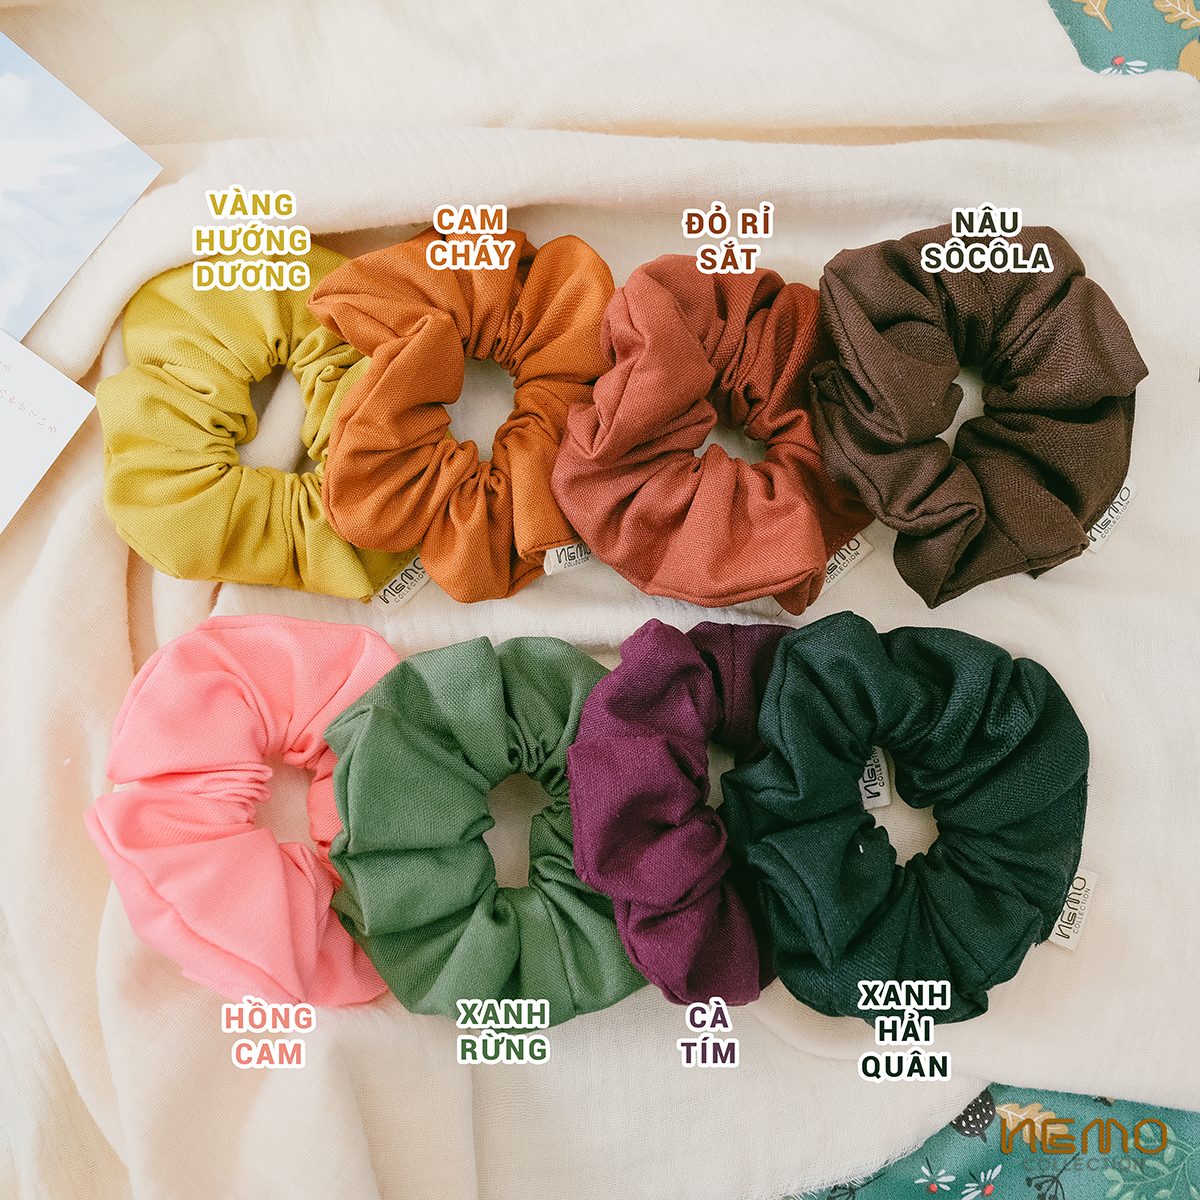 Cột Tóc Vải Linen Scrunchies NEMO Collection phôm phồng to sắc màu cổ điển - SCKM